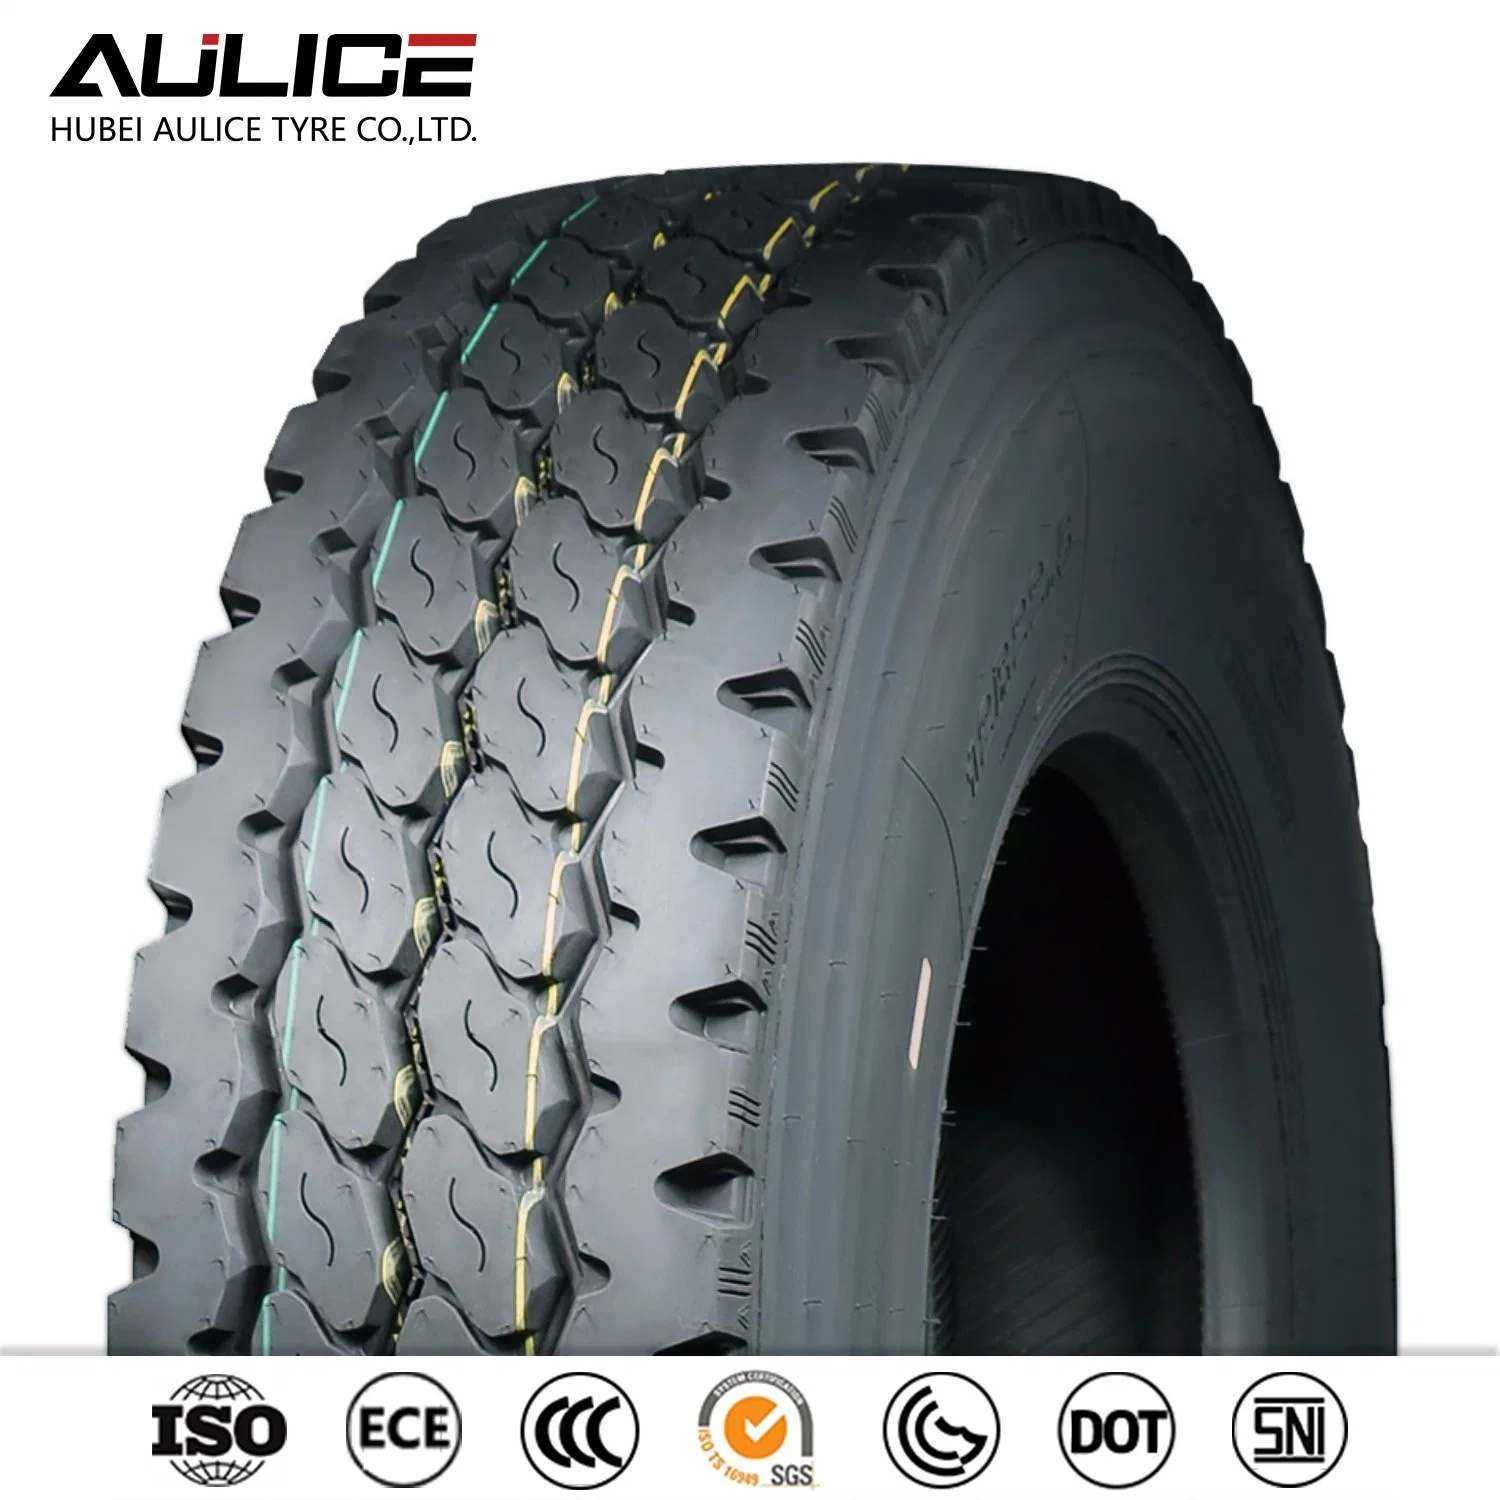 13R22.5 18PR neumático de camión radial, AR869 top marcas de neumáticos AULICE TBR/neumáticos OTR neumáticos tubeless fábrica de neumáticos de camiones pesados